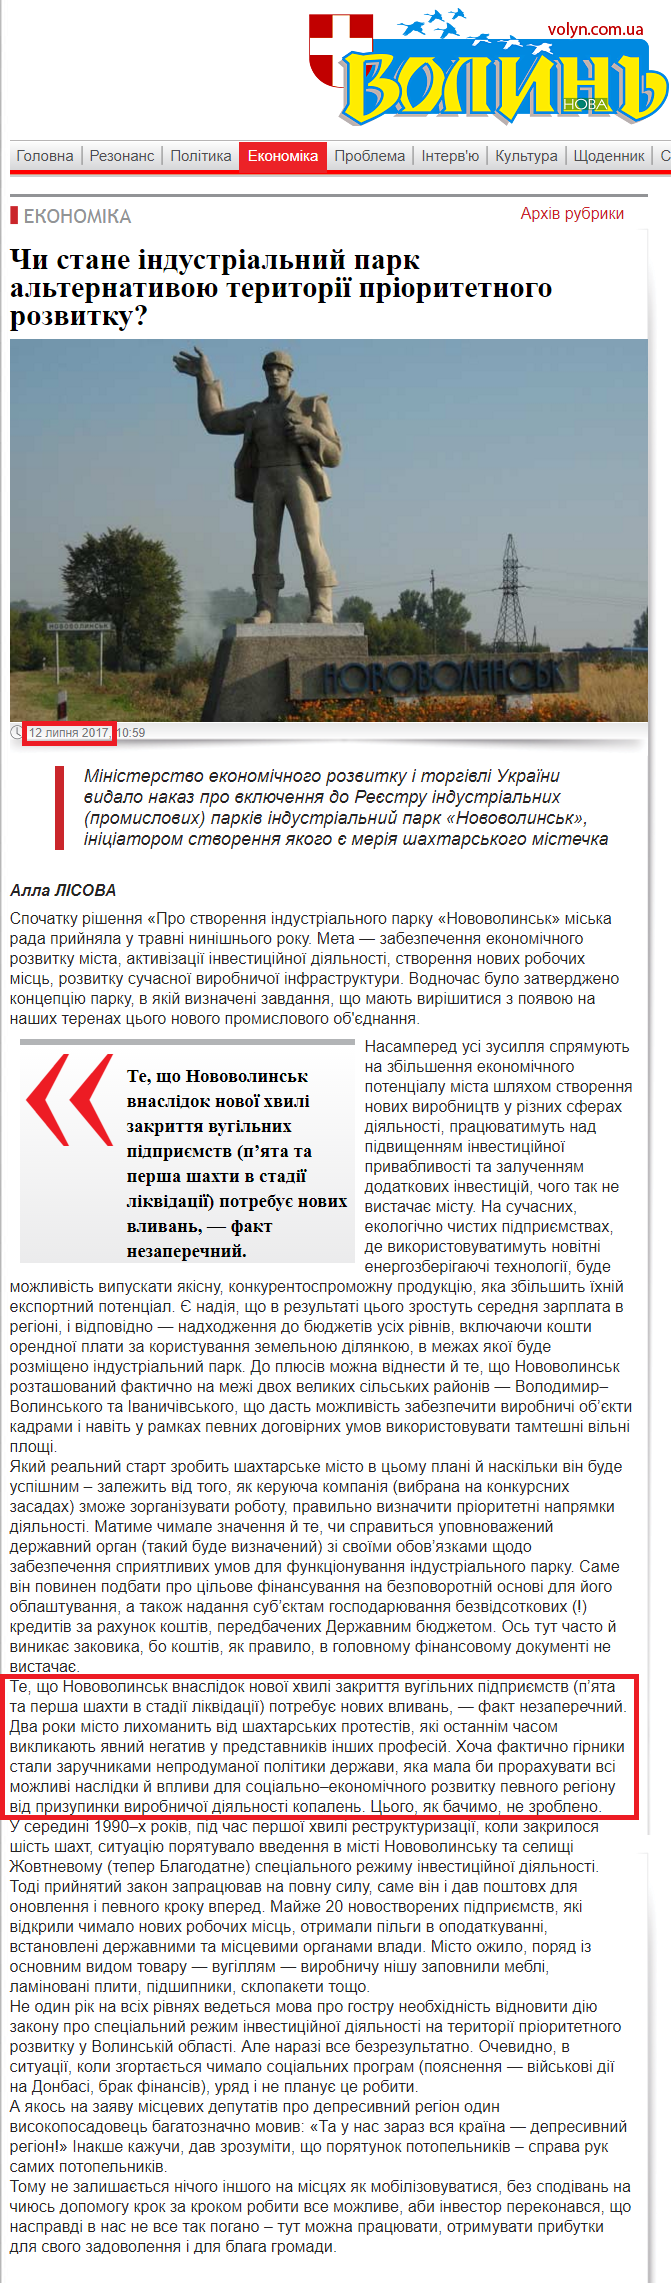 http://volyn.com.ua/news/80911-chi-stane-industrialniy-park-alternativoyu-teritoriyi-prioritetnogo-rozvitku.html